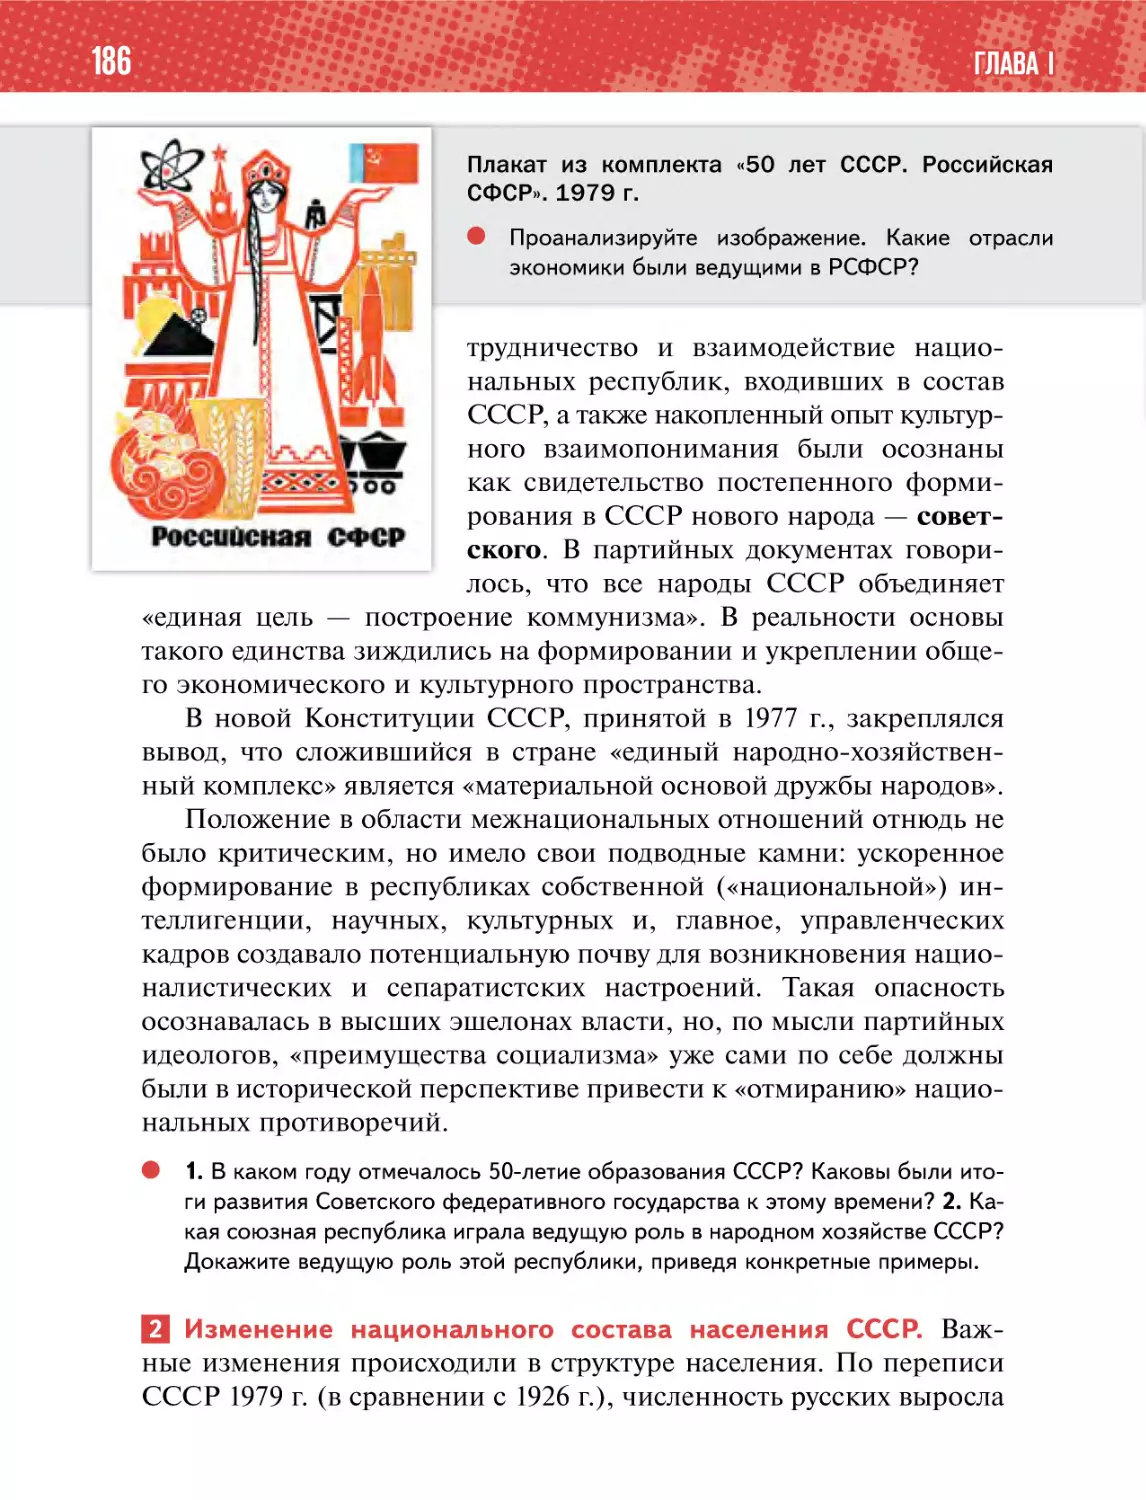 2 Изменение национального состава населения СССР.